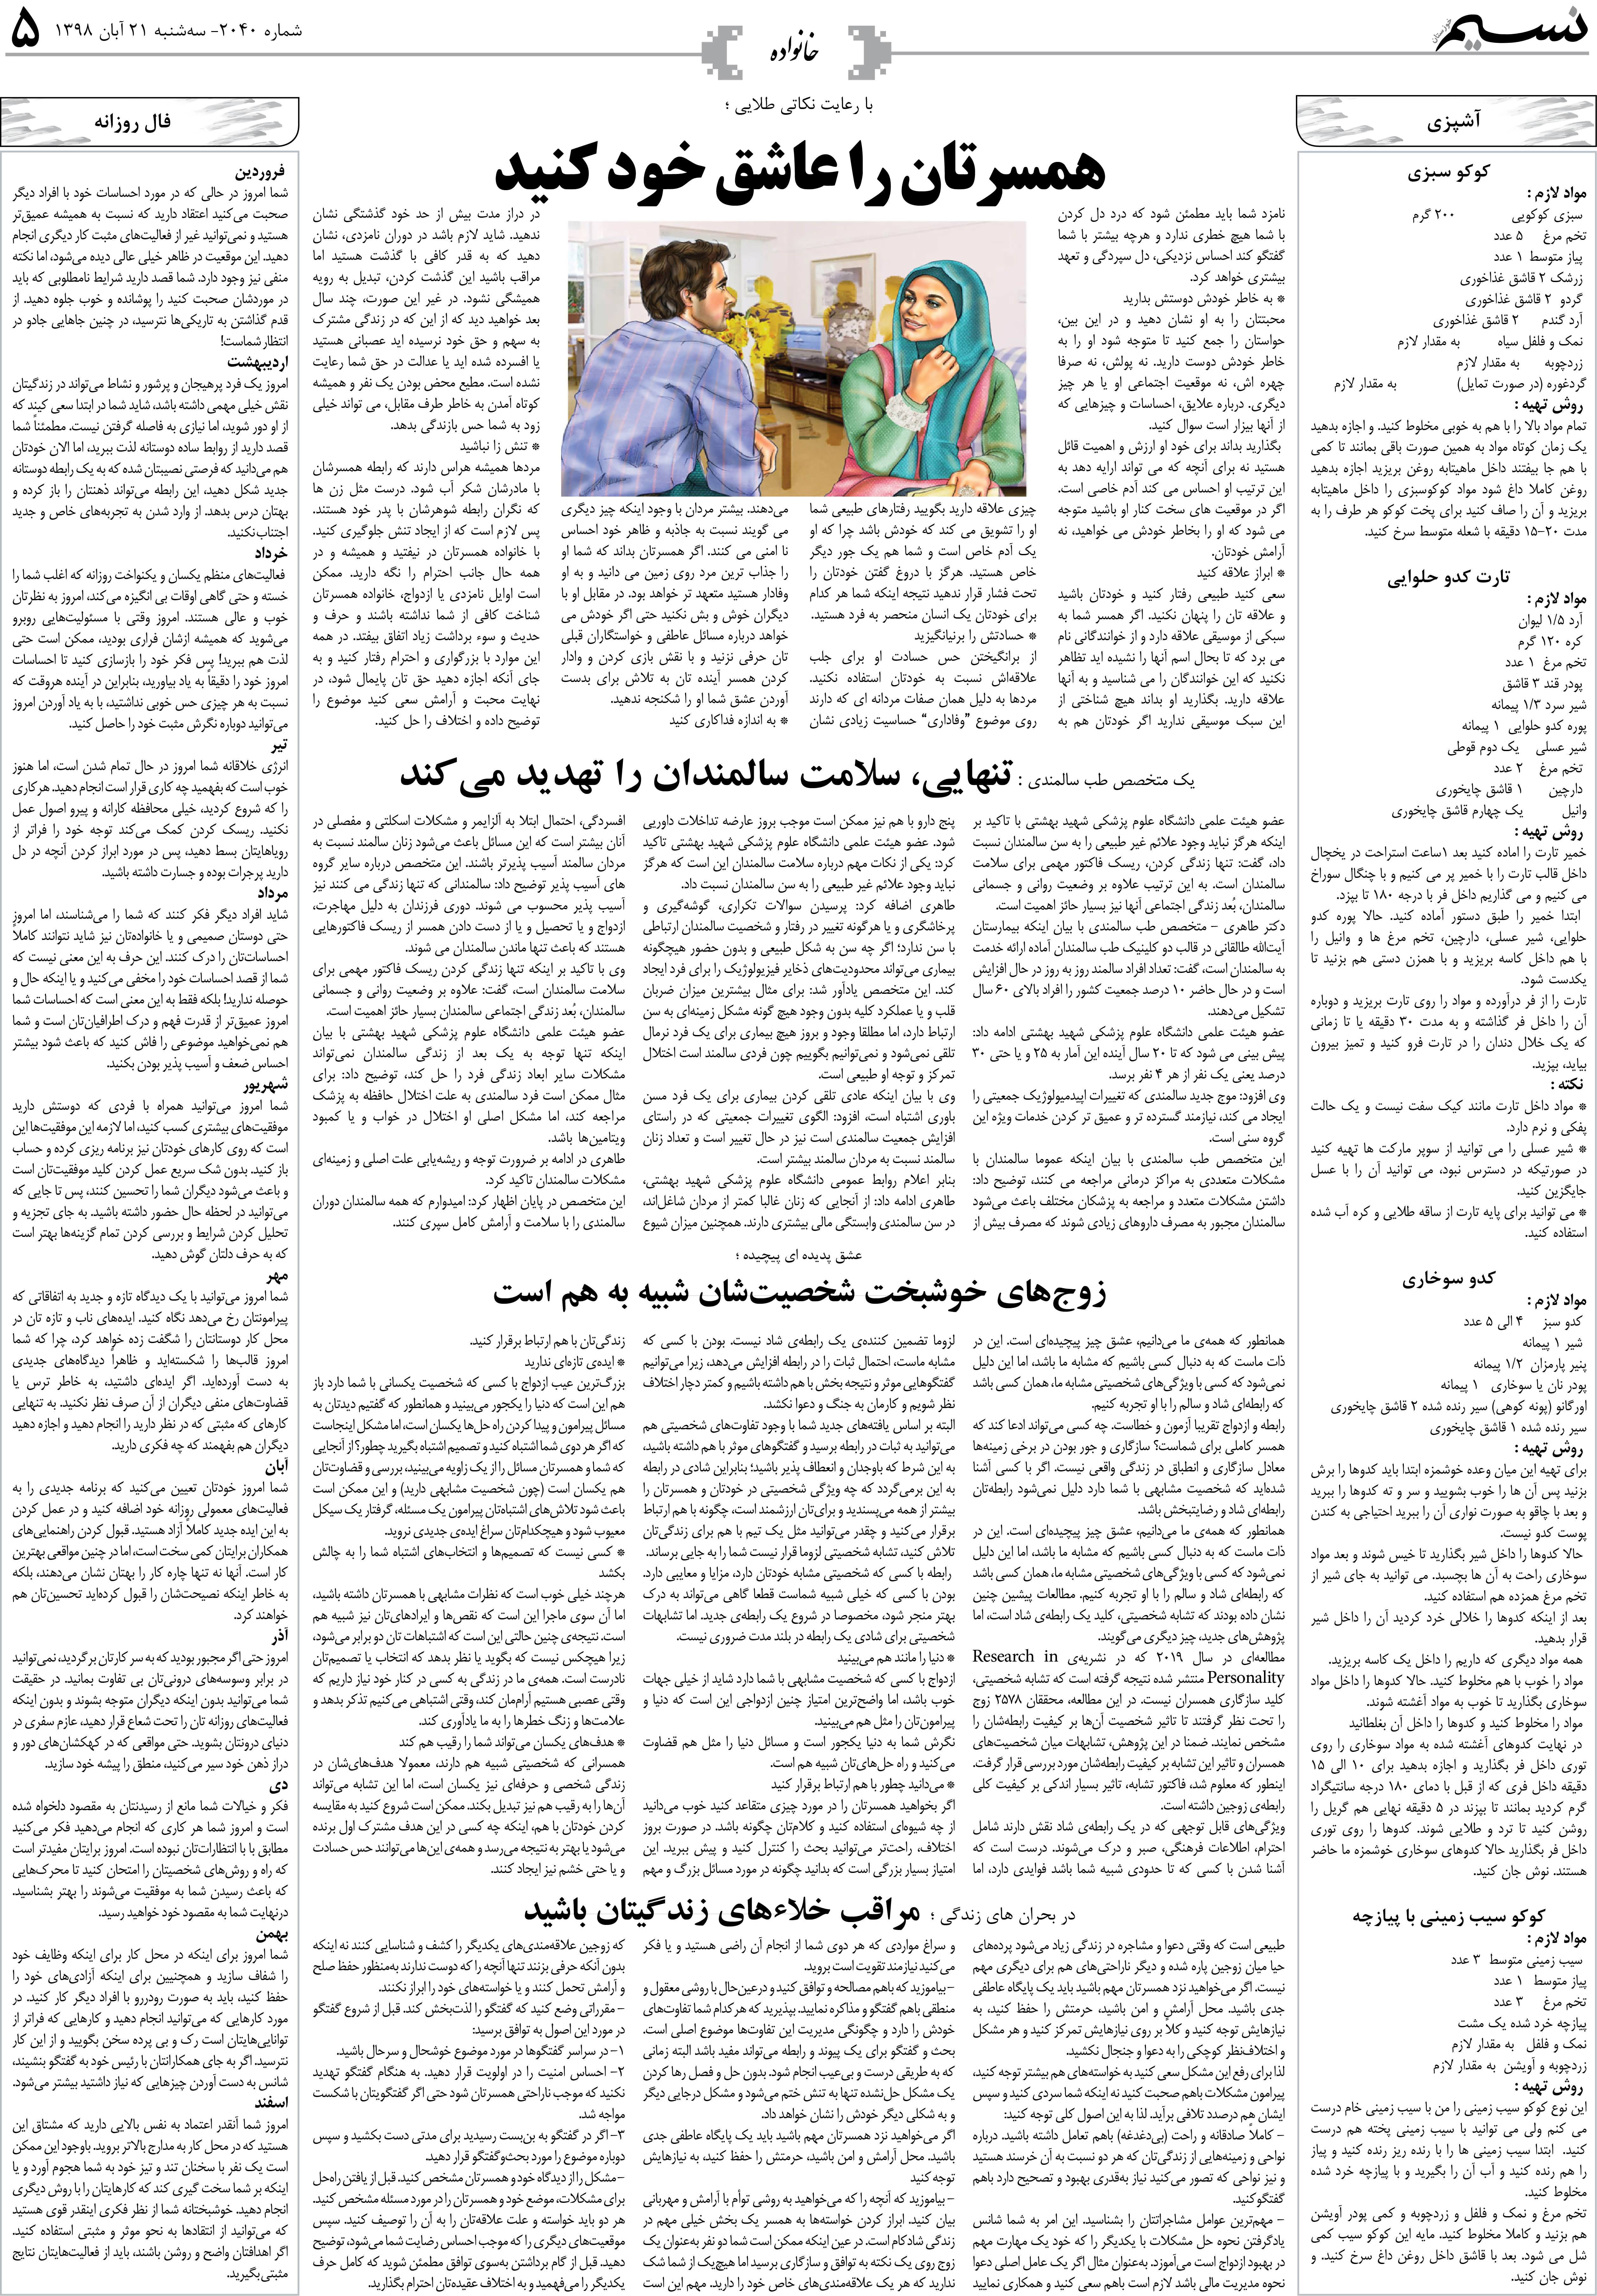 صفحه خانواده روزنامه نسیم شماره 2040